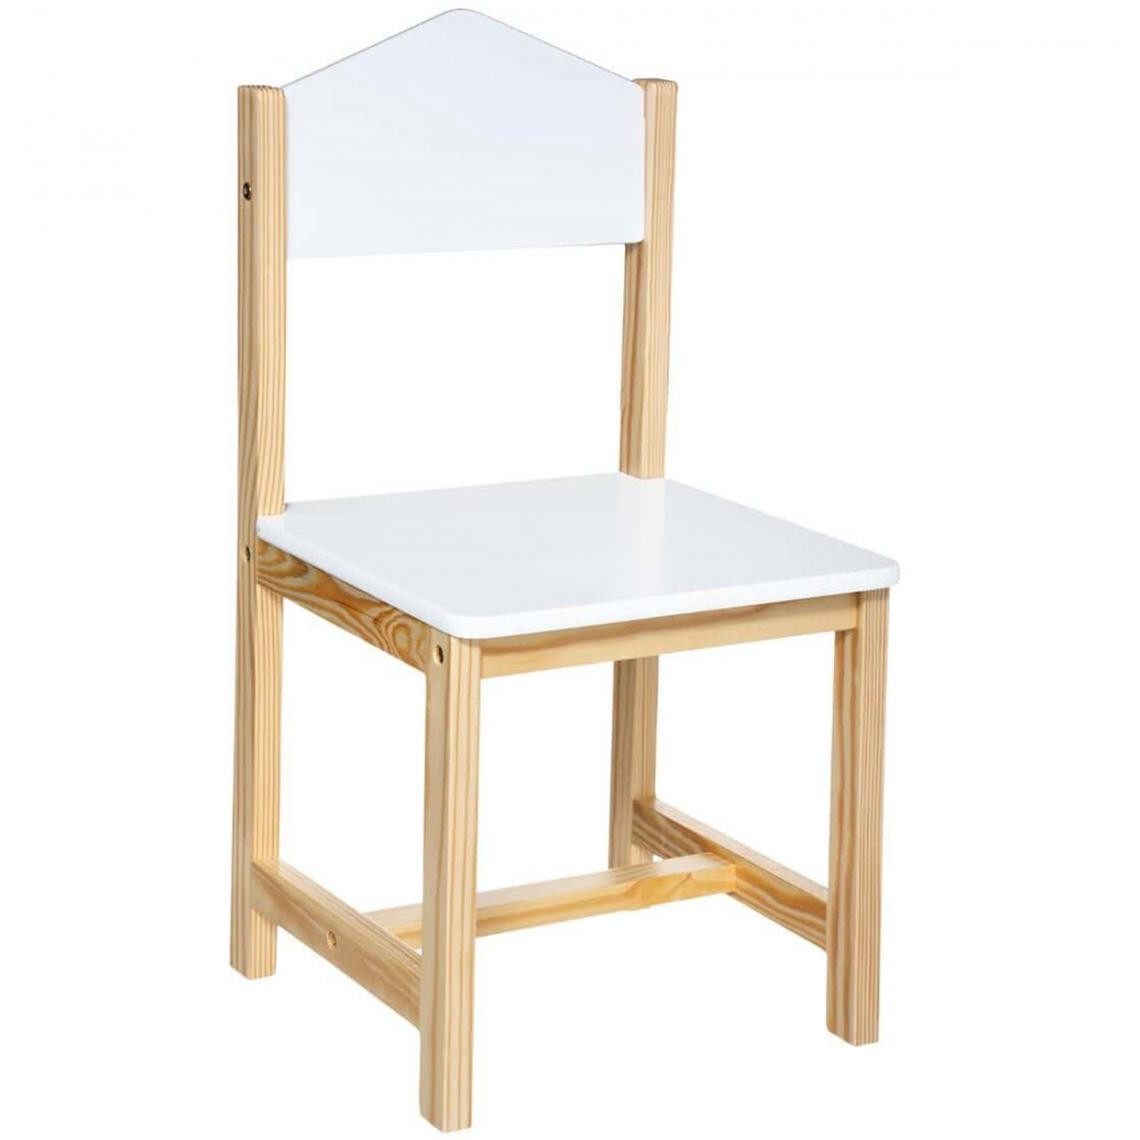 Pegane - Chaise enfant coloris blanc/naturel - Longueur 28,5 x Profondeur 29 x Hauteur 59 cm - Chaises